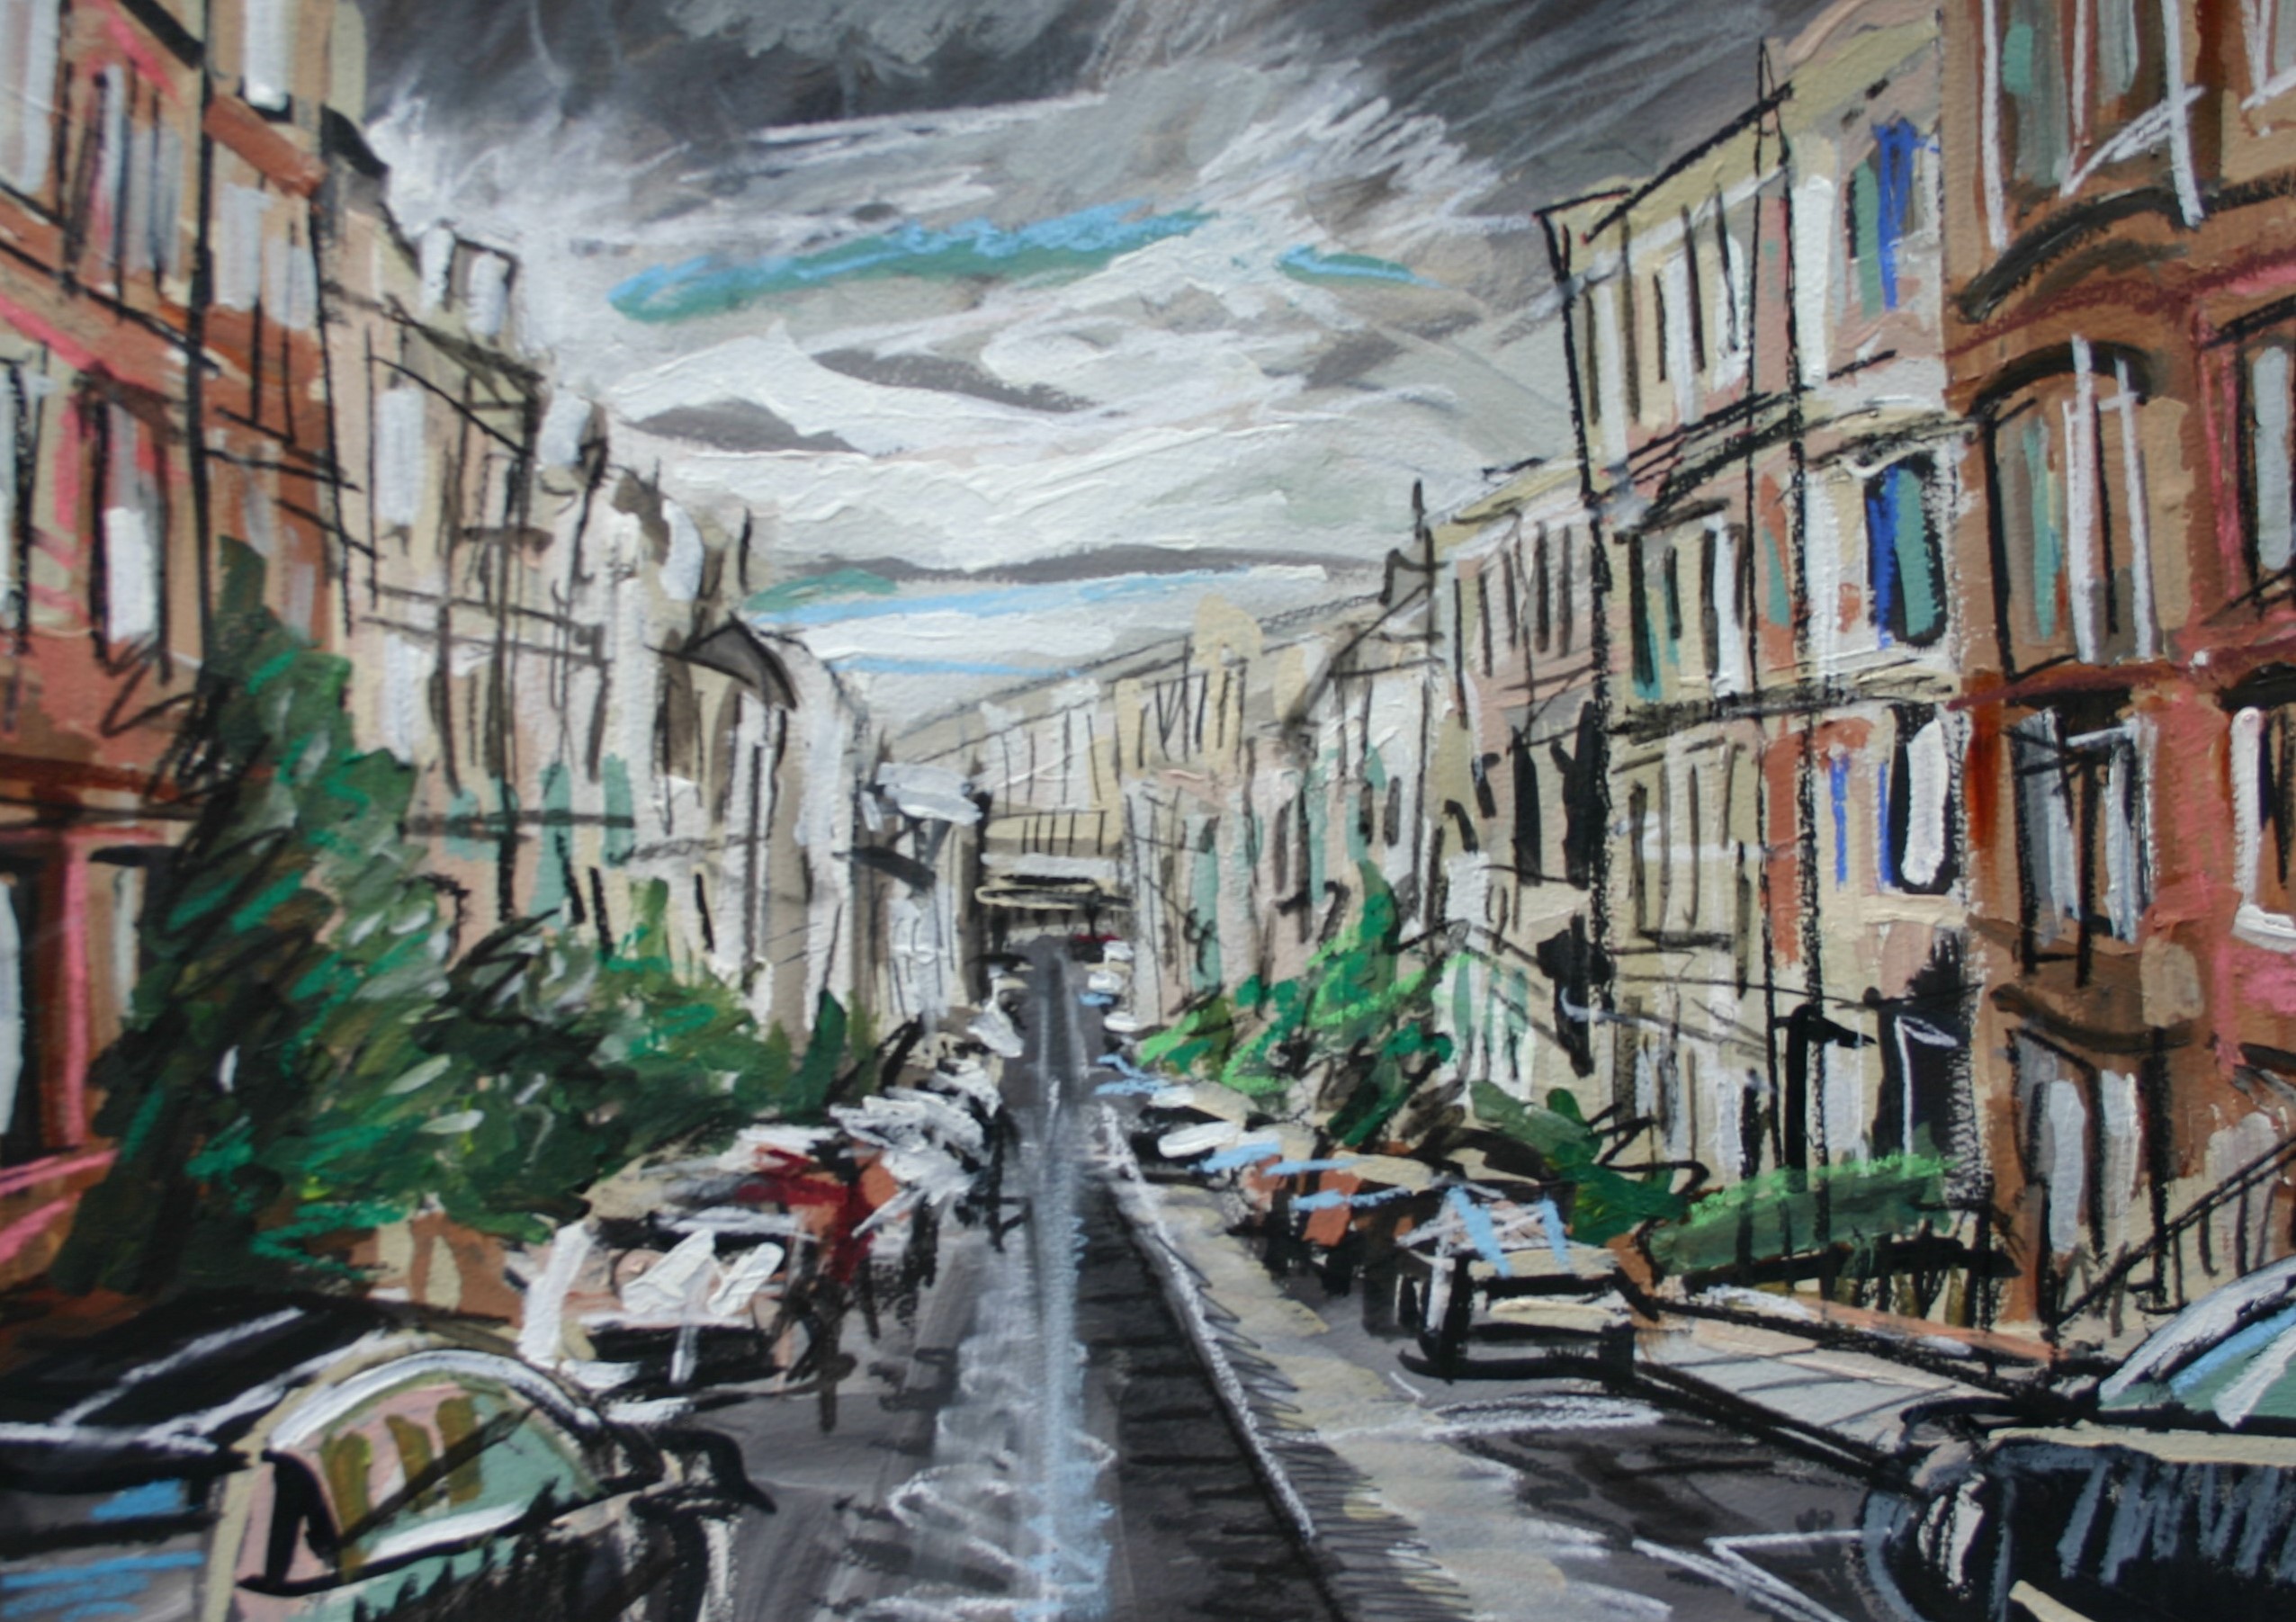 'Gardner Street, Partick Hill' by artist Matthew Thompson